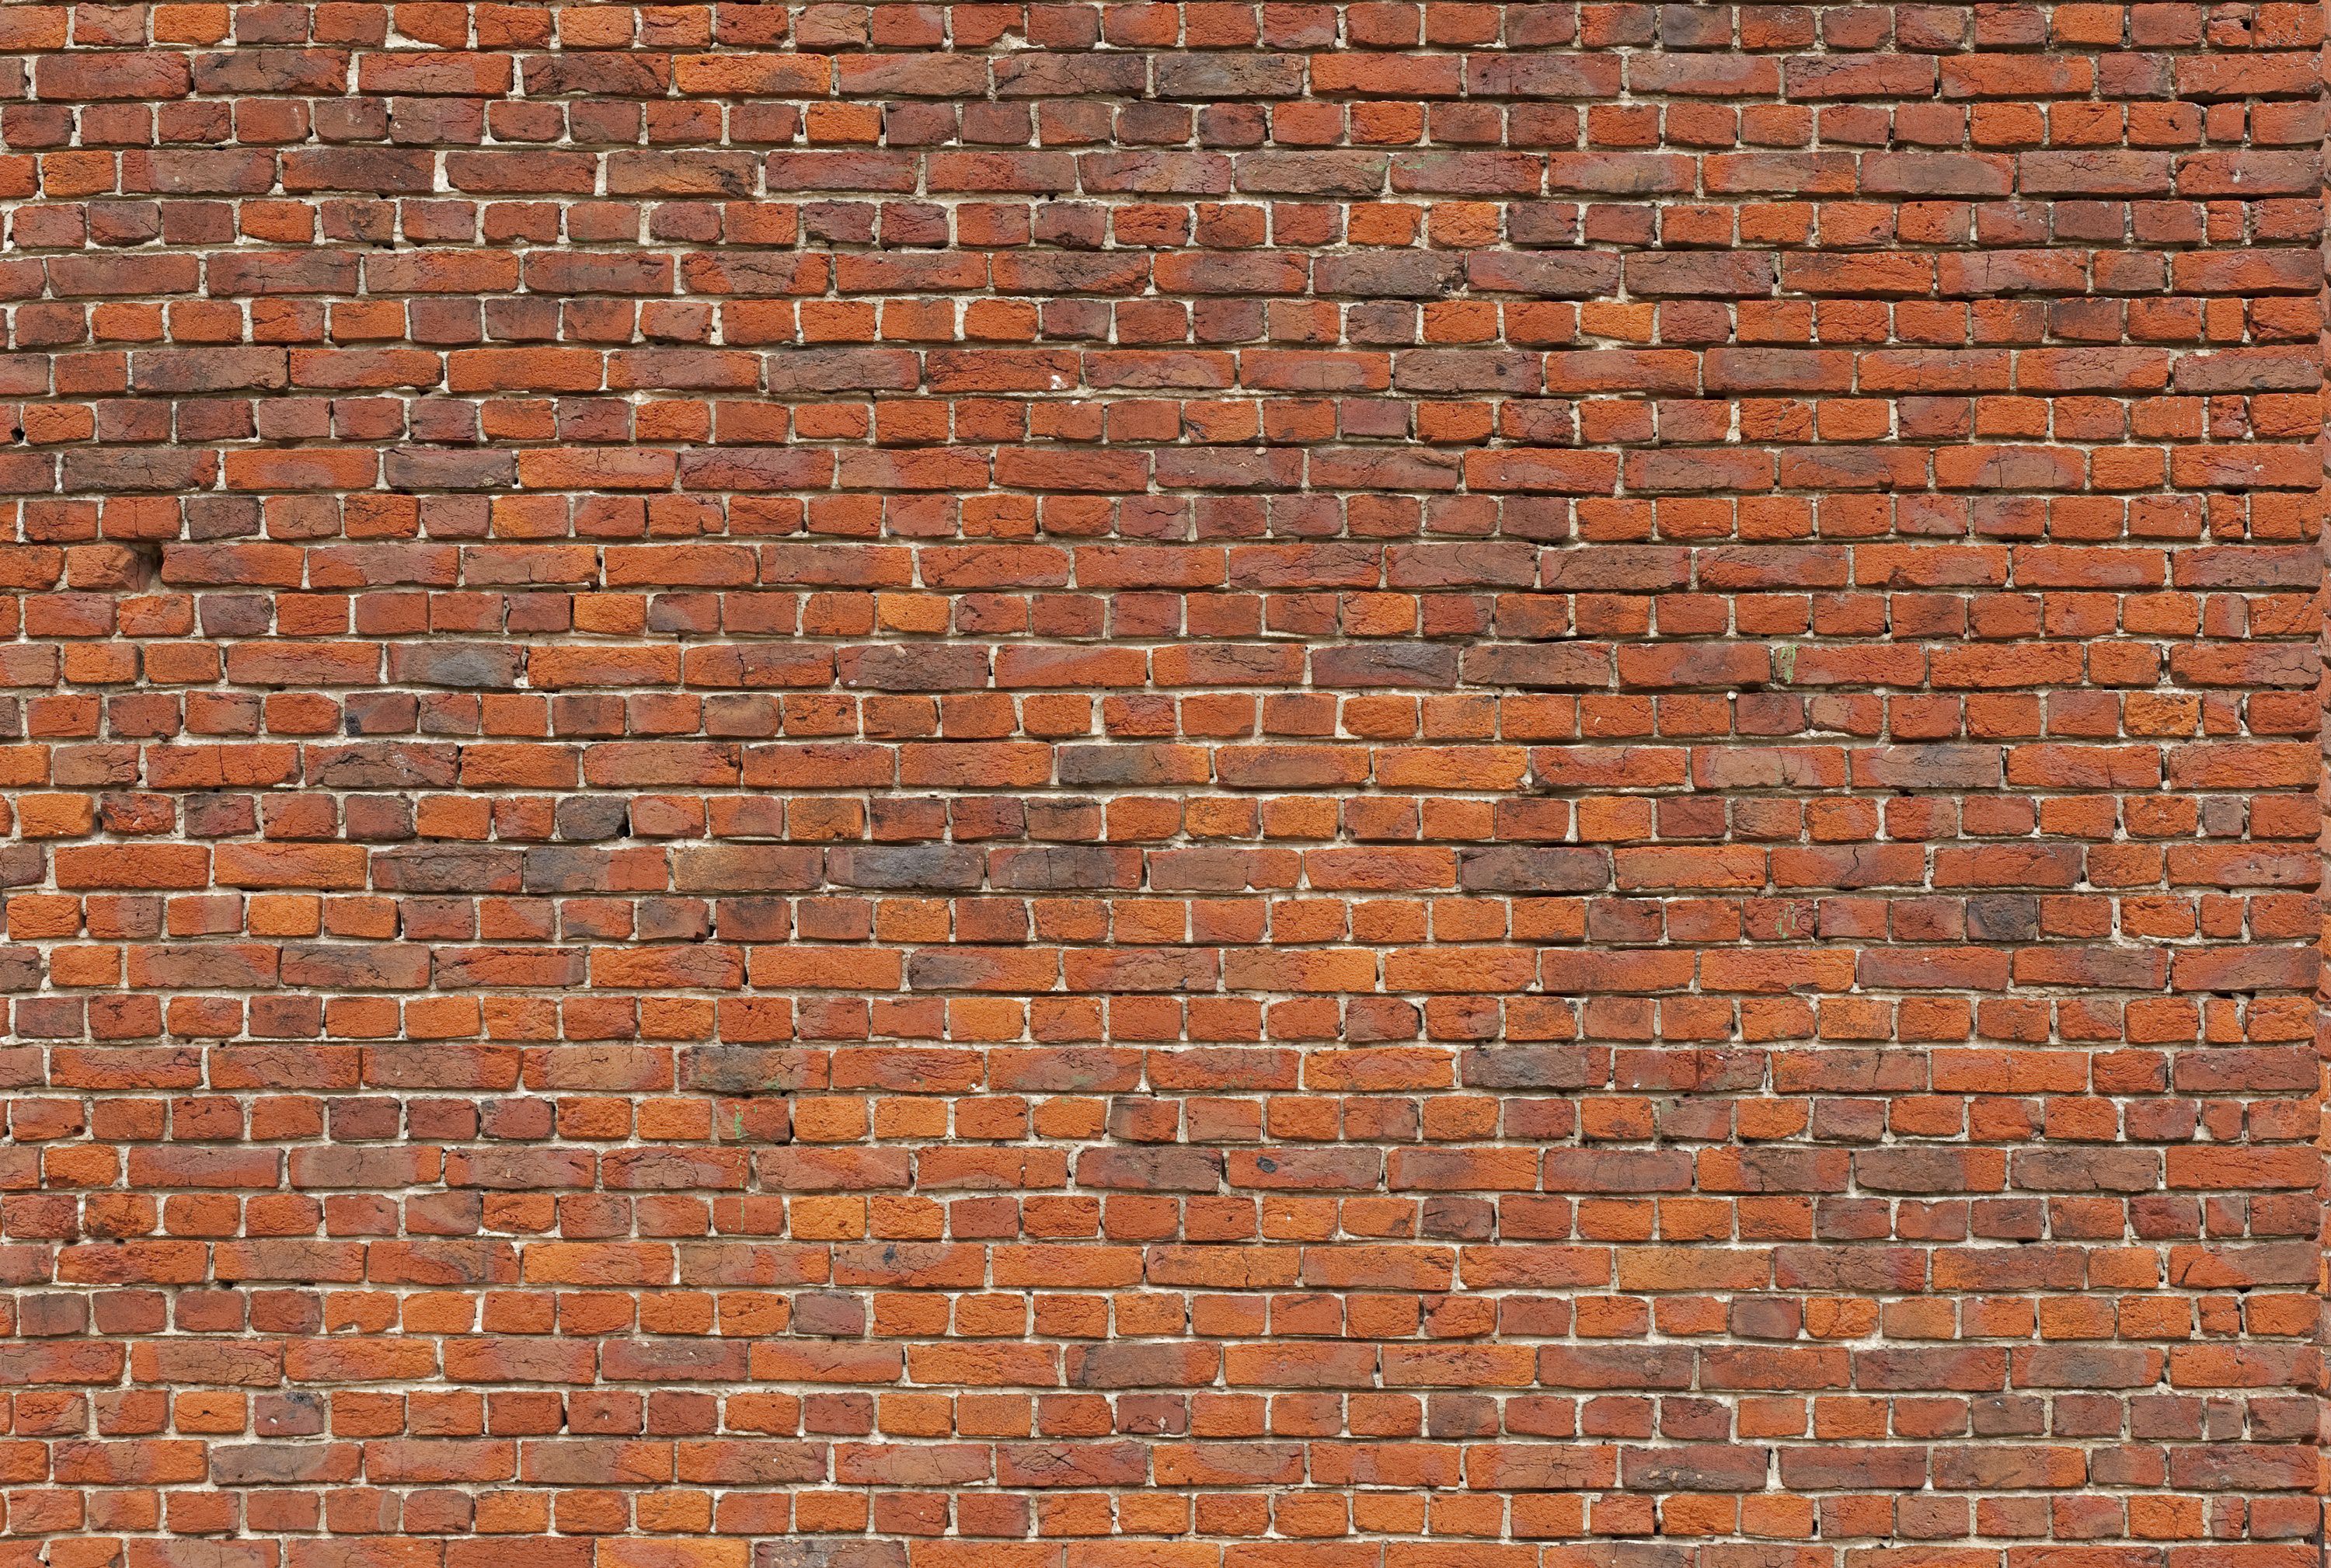 Brick Wall Sample